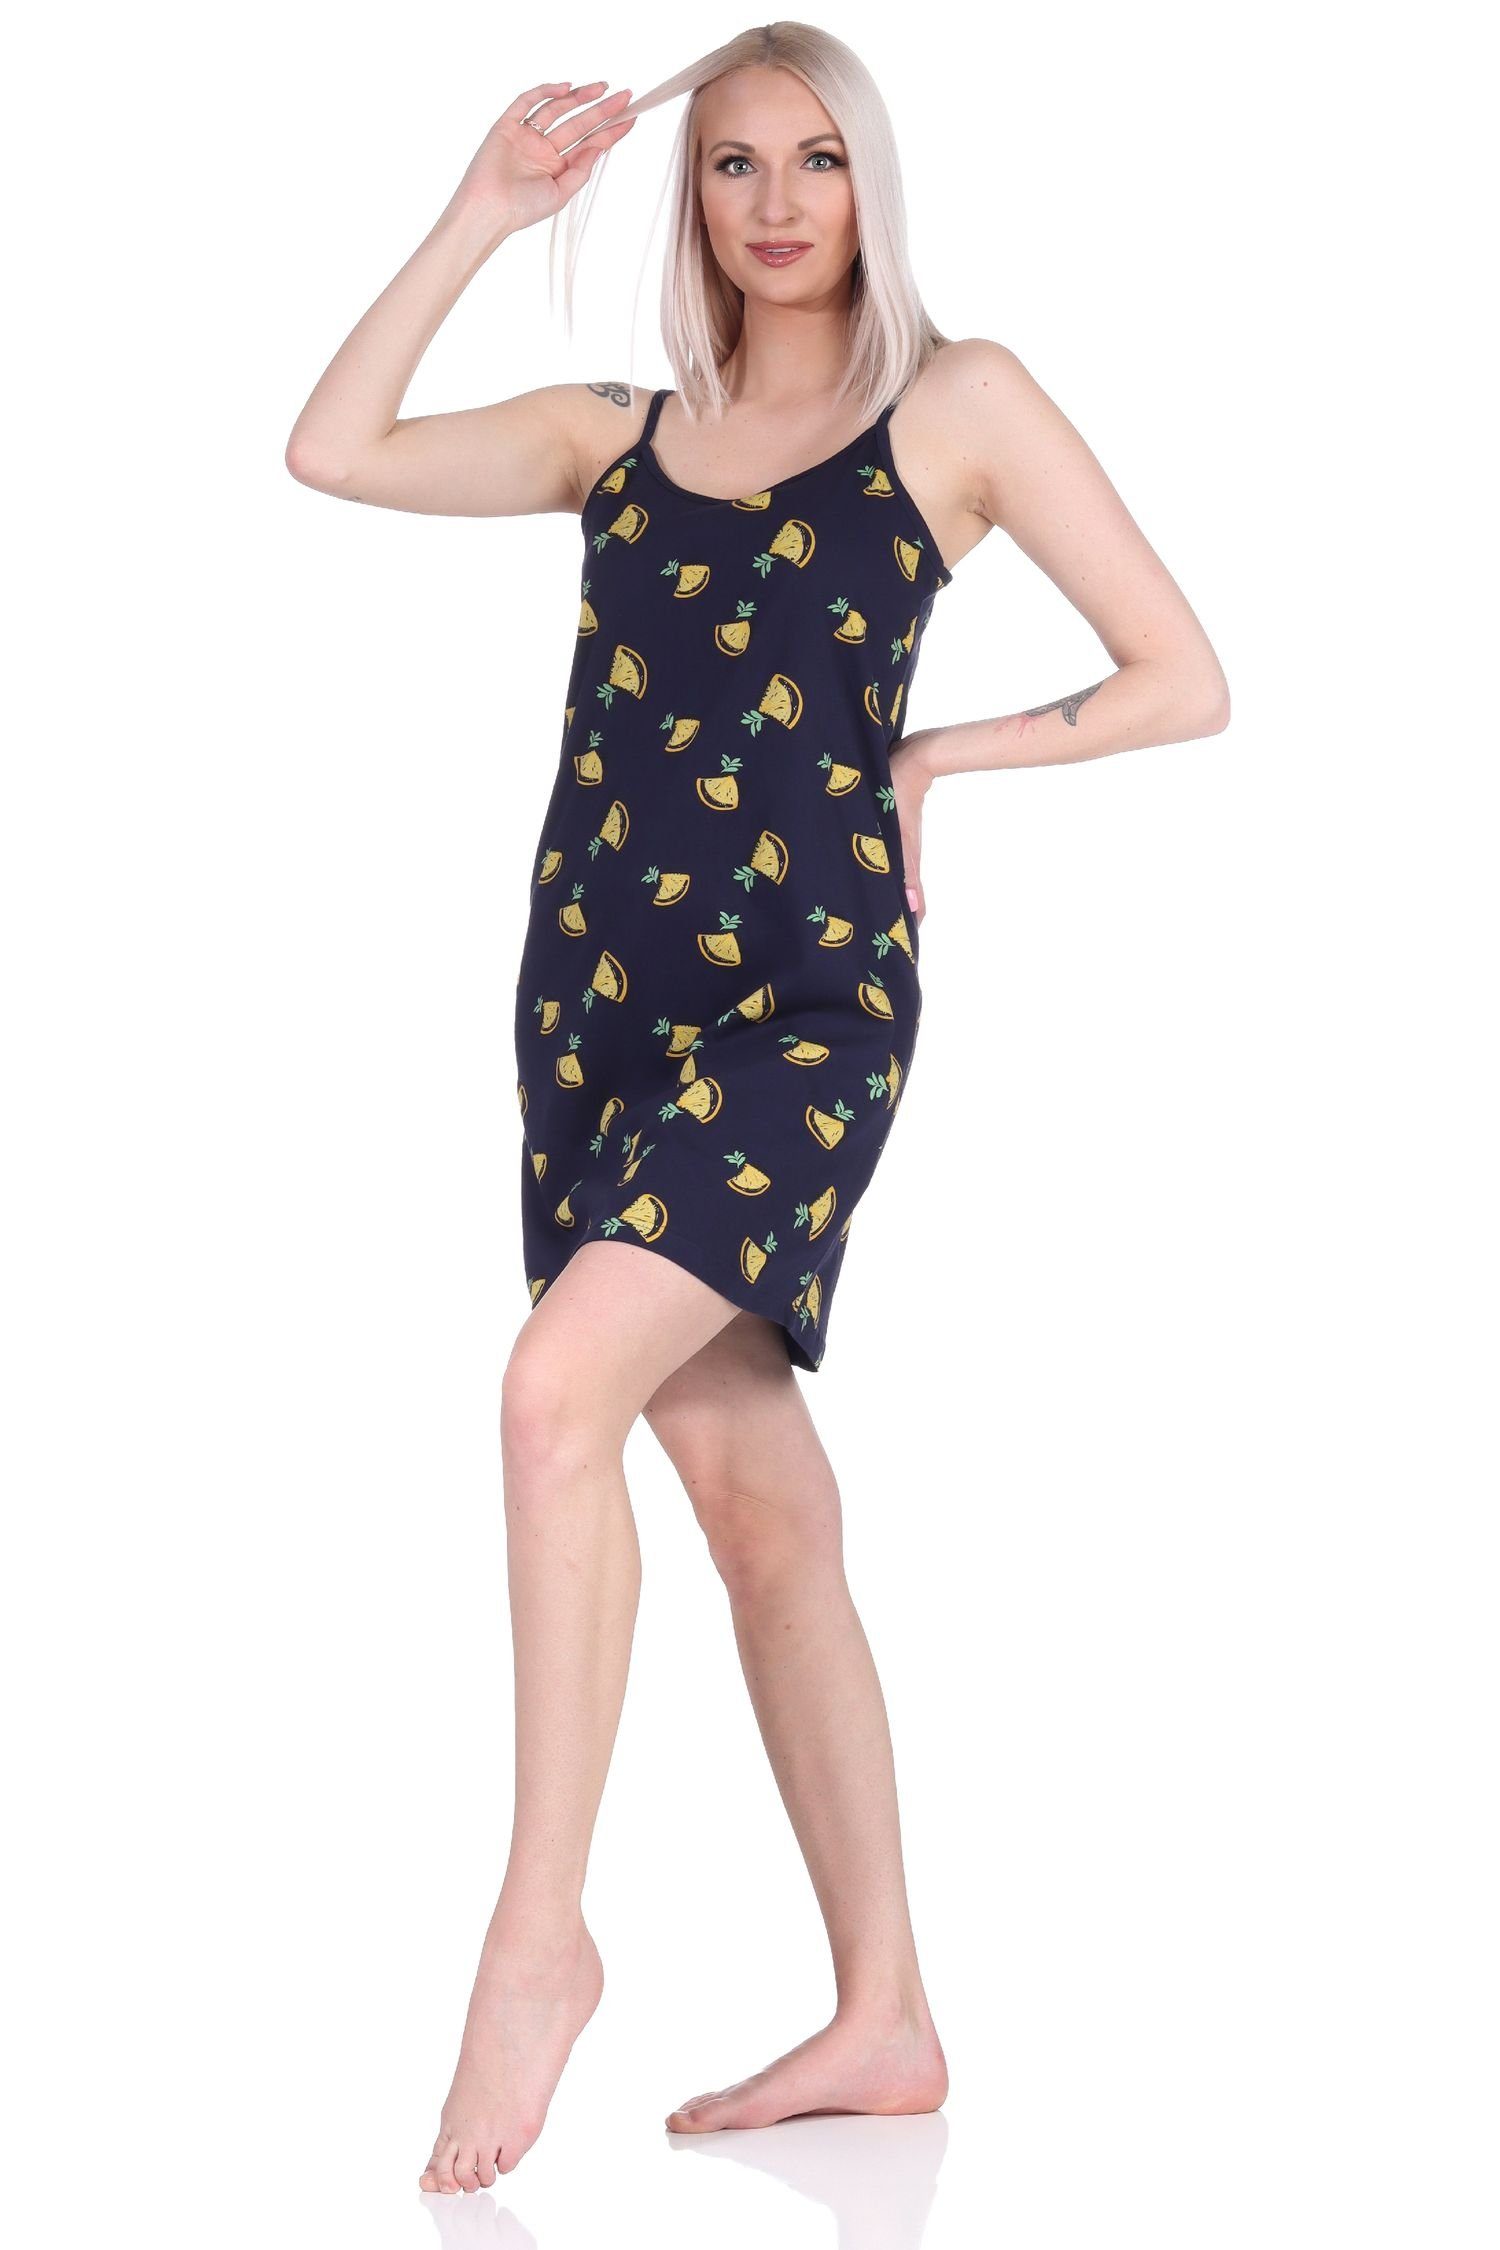 Damen mit Zitronen Übergrößen Motiv Nachthemd marine Normann als - Spaghetti Nachthemd auch in